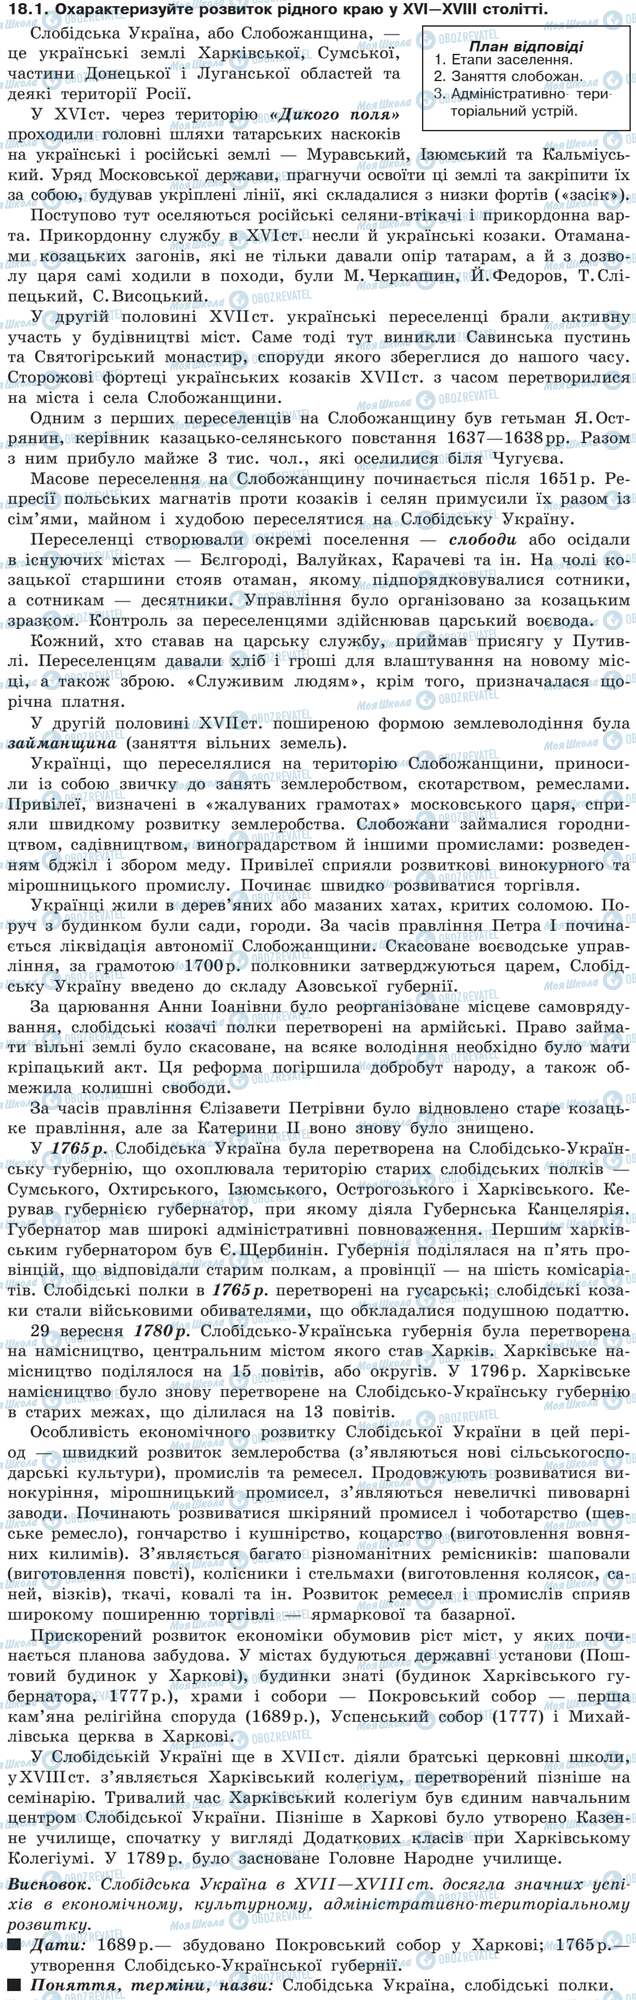 ДПА Історія України 9 клас сторінка 18.1